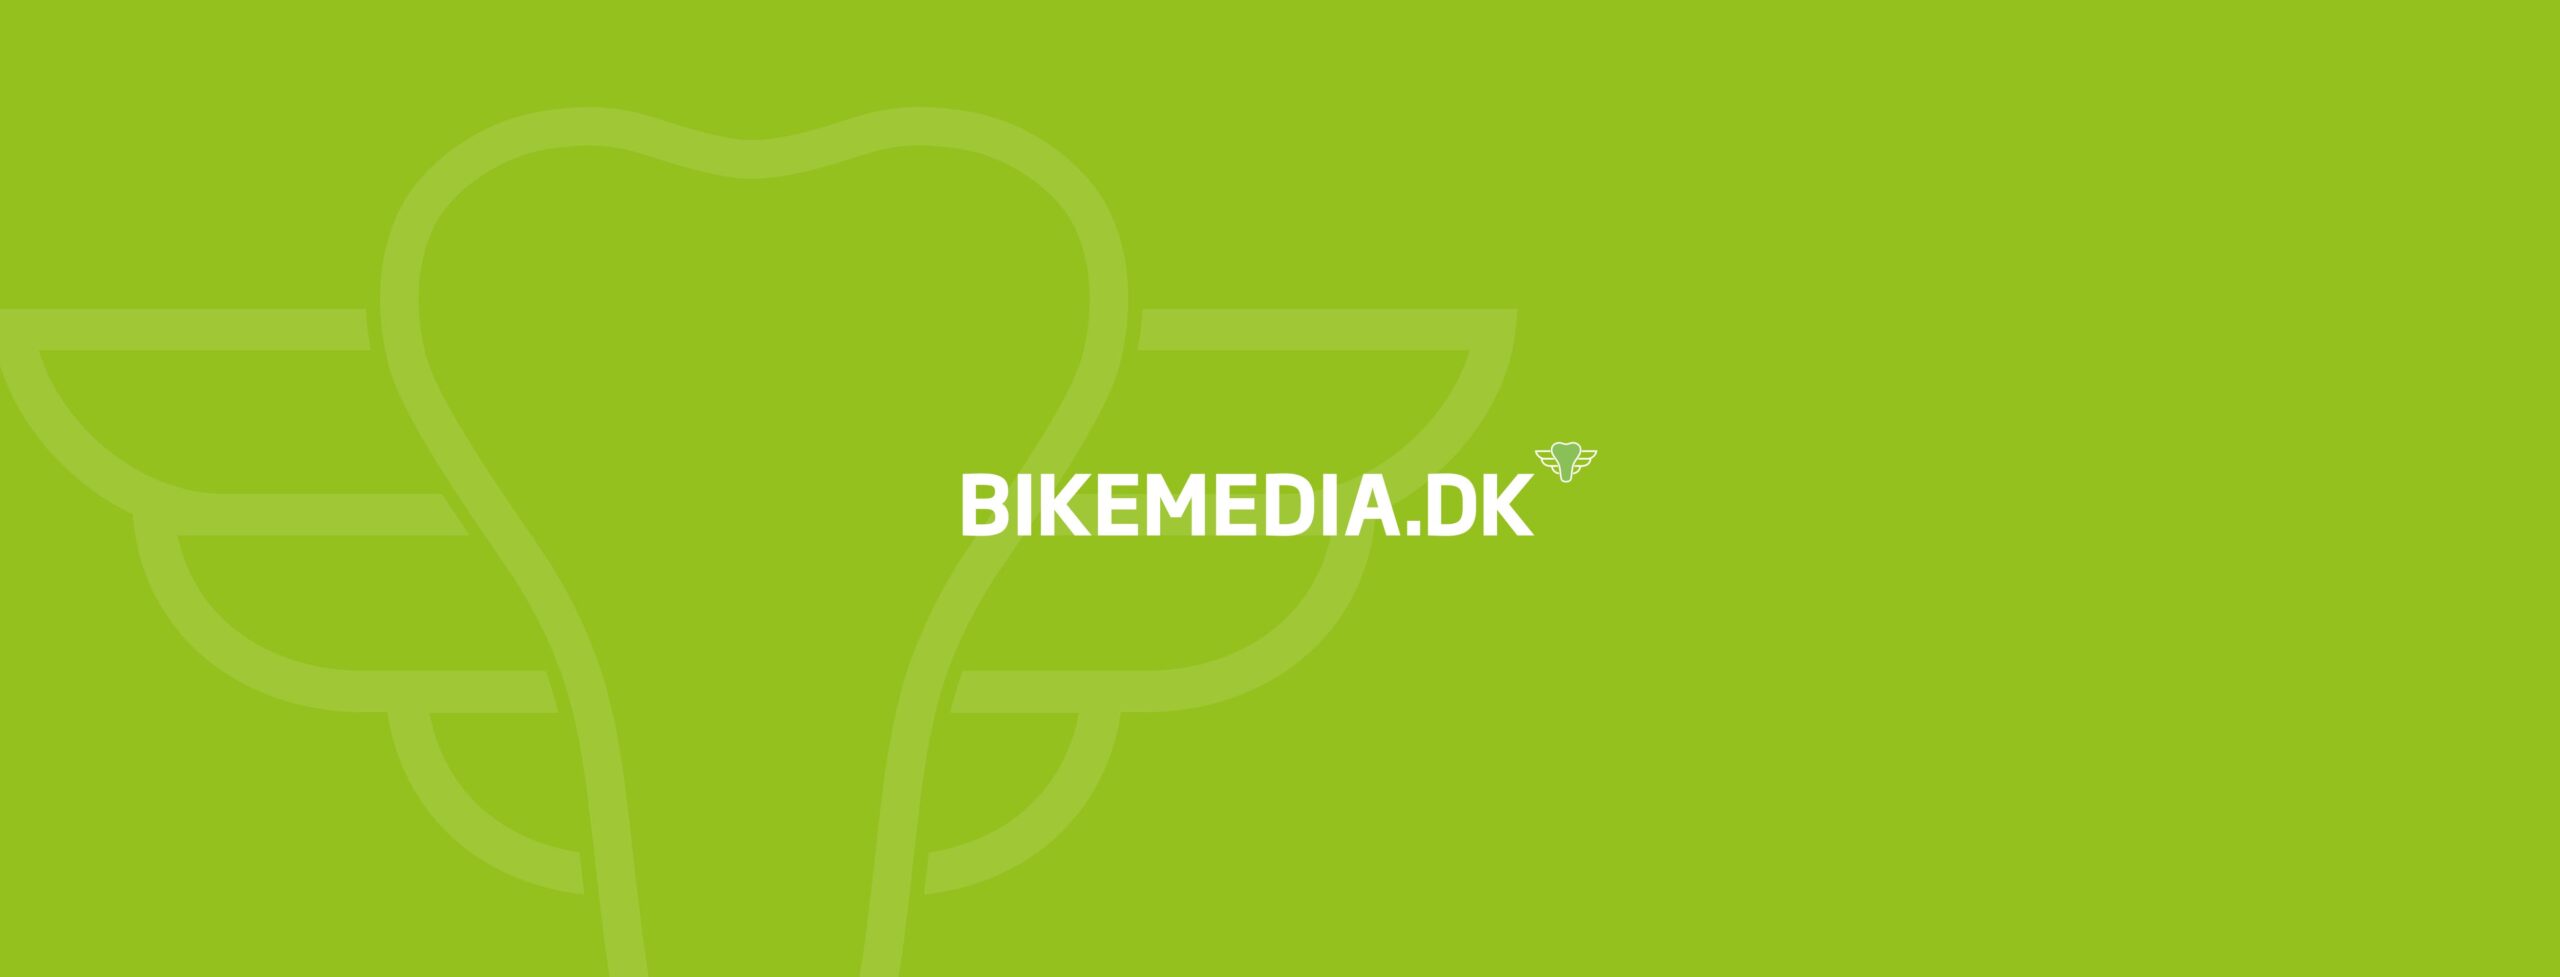 header til bikemedia